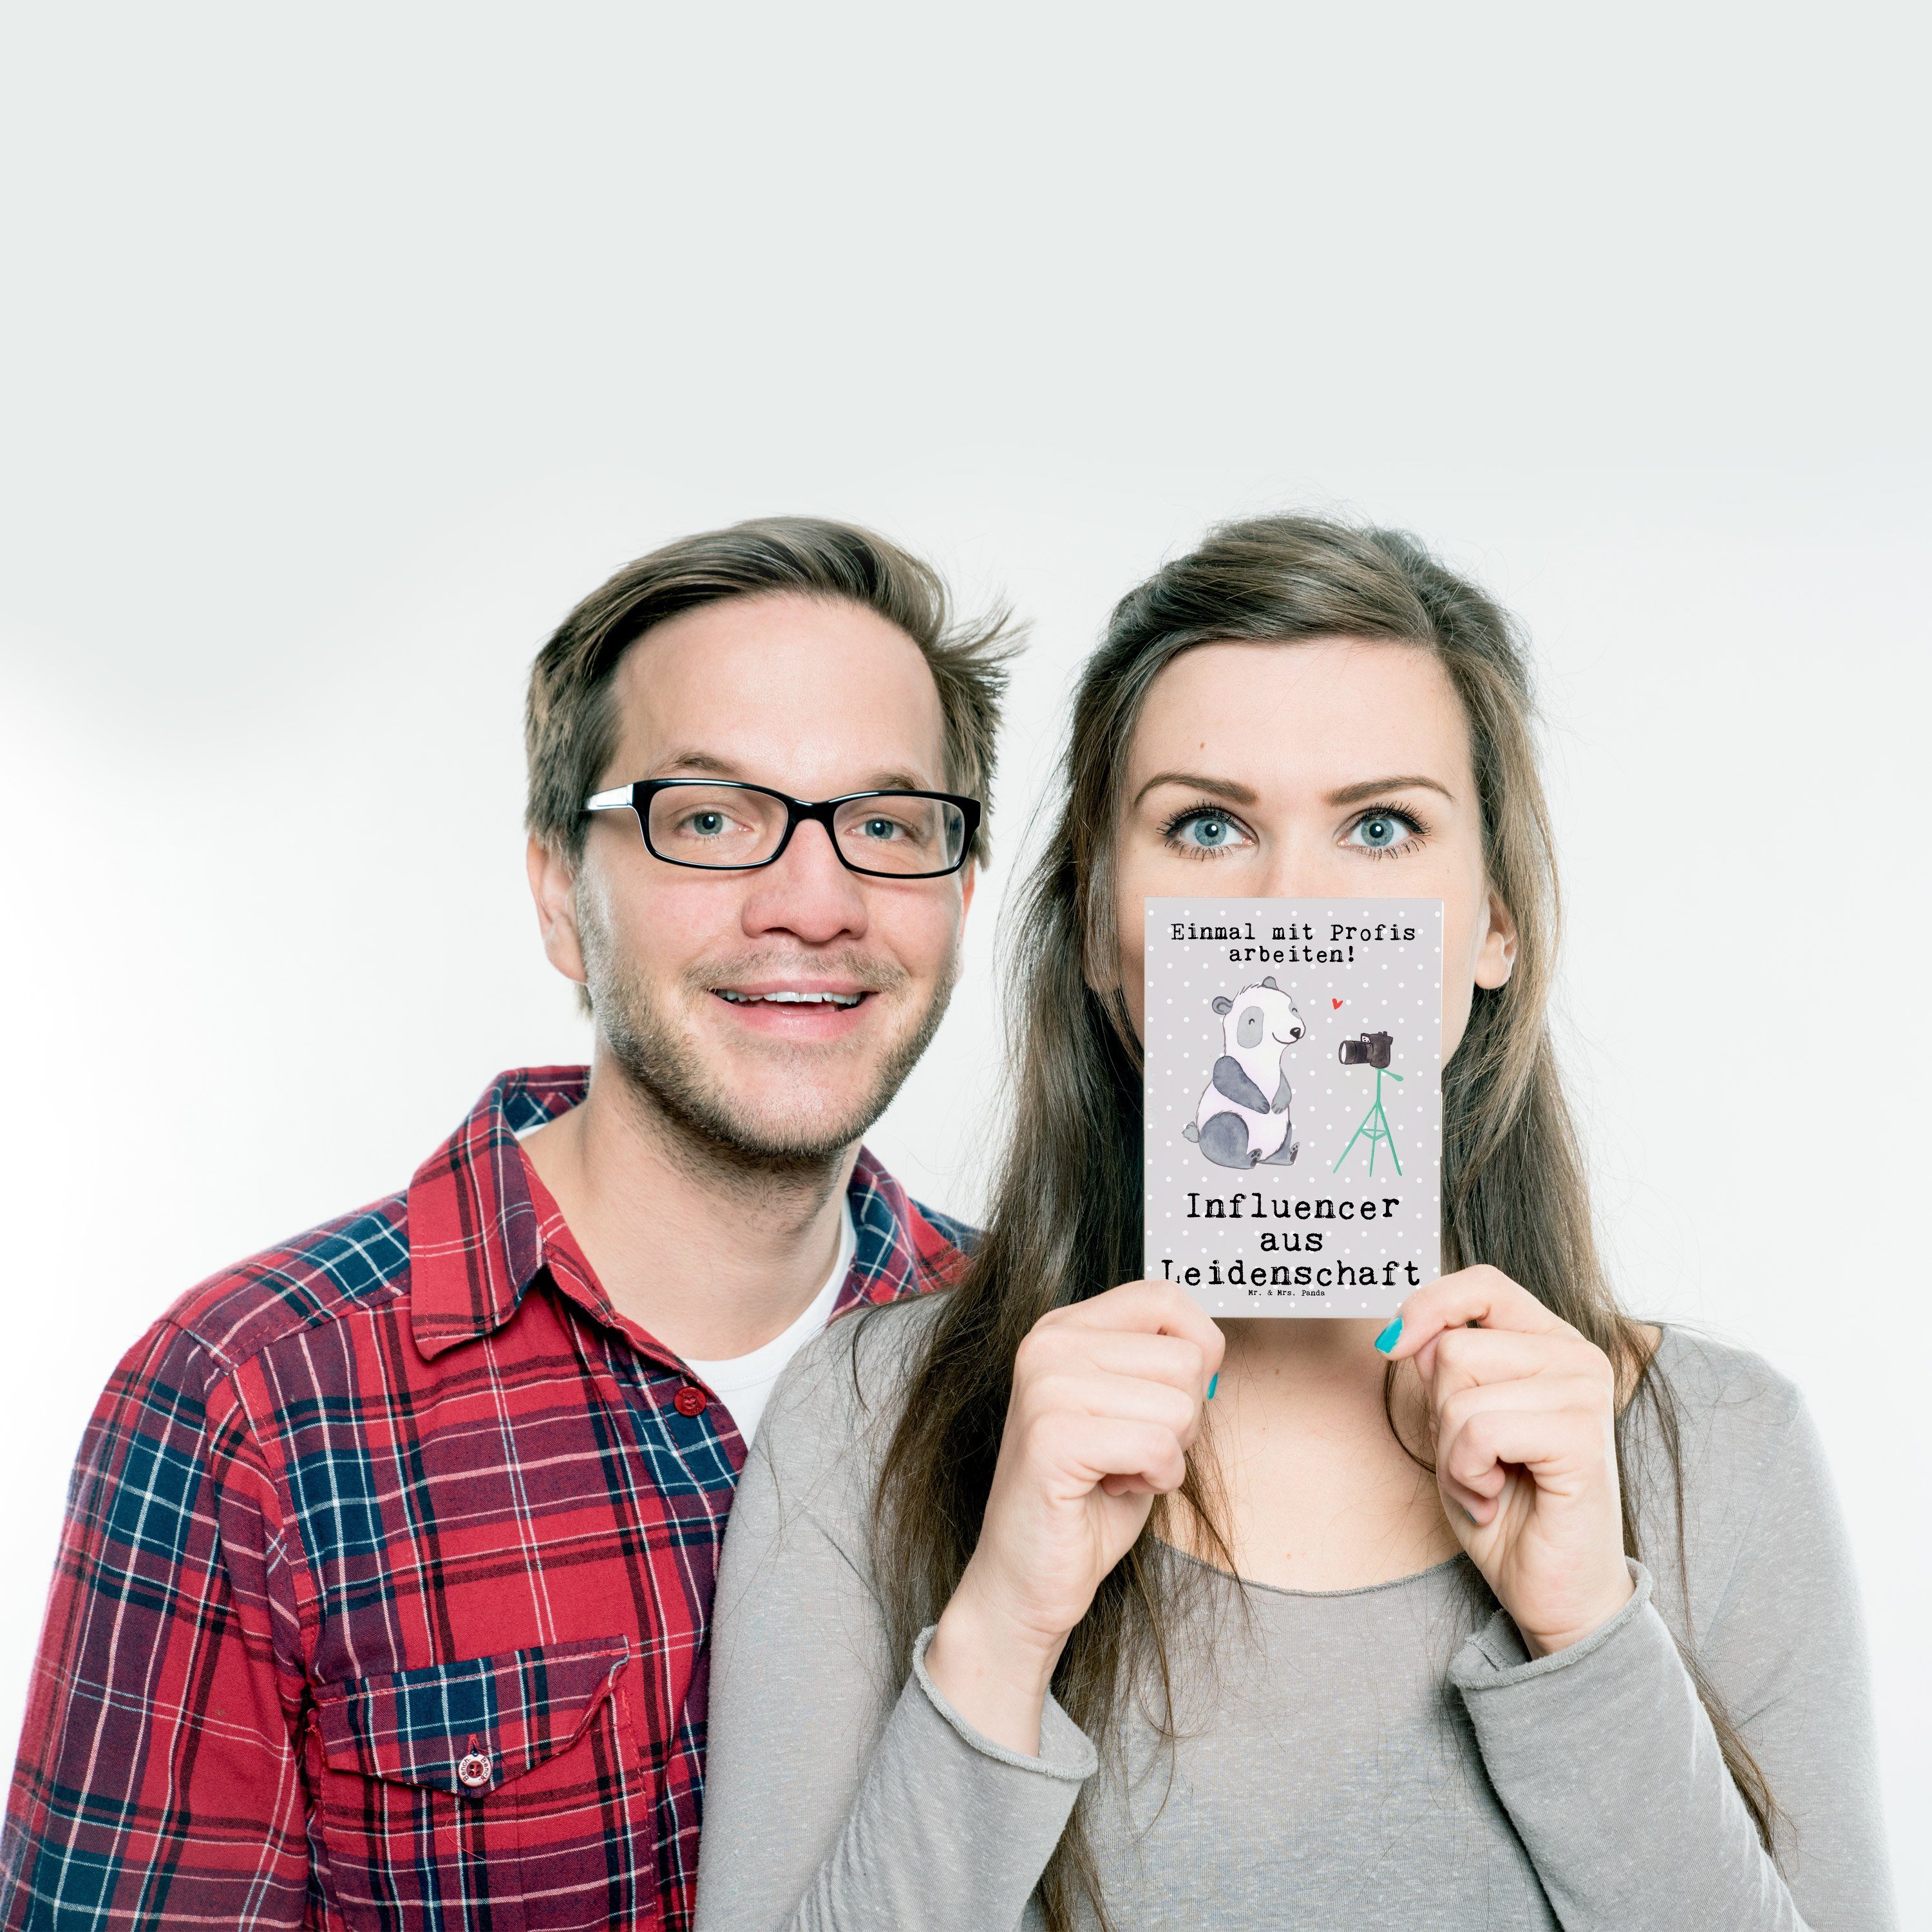 Mr. & Mrs. Panda aus Grußkarte, Geschenk, - Pastell Influencer Leidenschaft Postkarte Kar - Grau